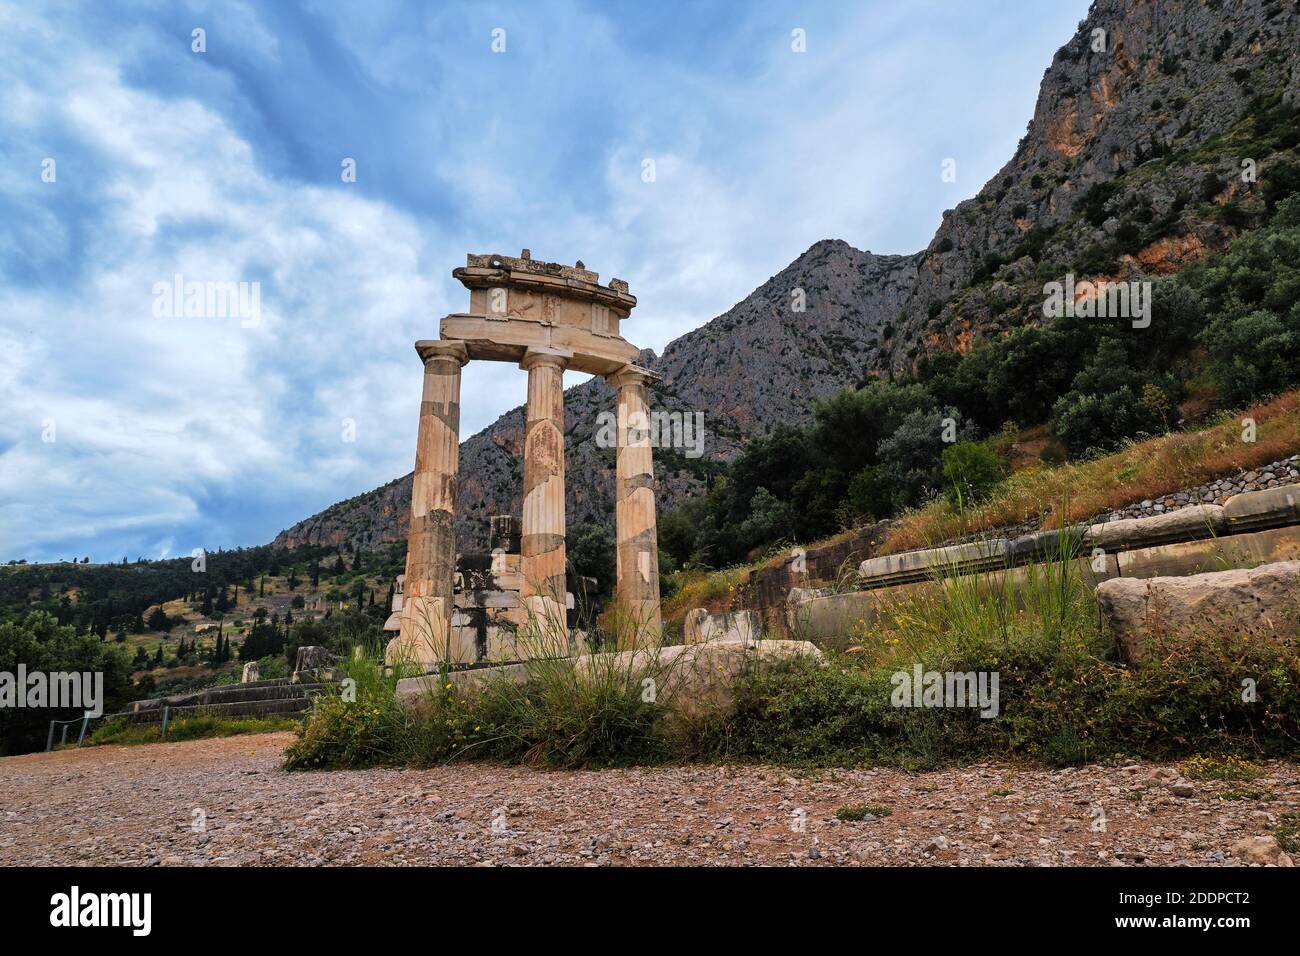 Ruinen von Tholos der antiken griechischen Göttin Athena Pronaia in Delphi, Griechenland. Drei dorische Säulen auf dem heiligen Berg Parnassos. UNESCO-Weltkulturerbe. Stockfoto